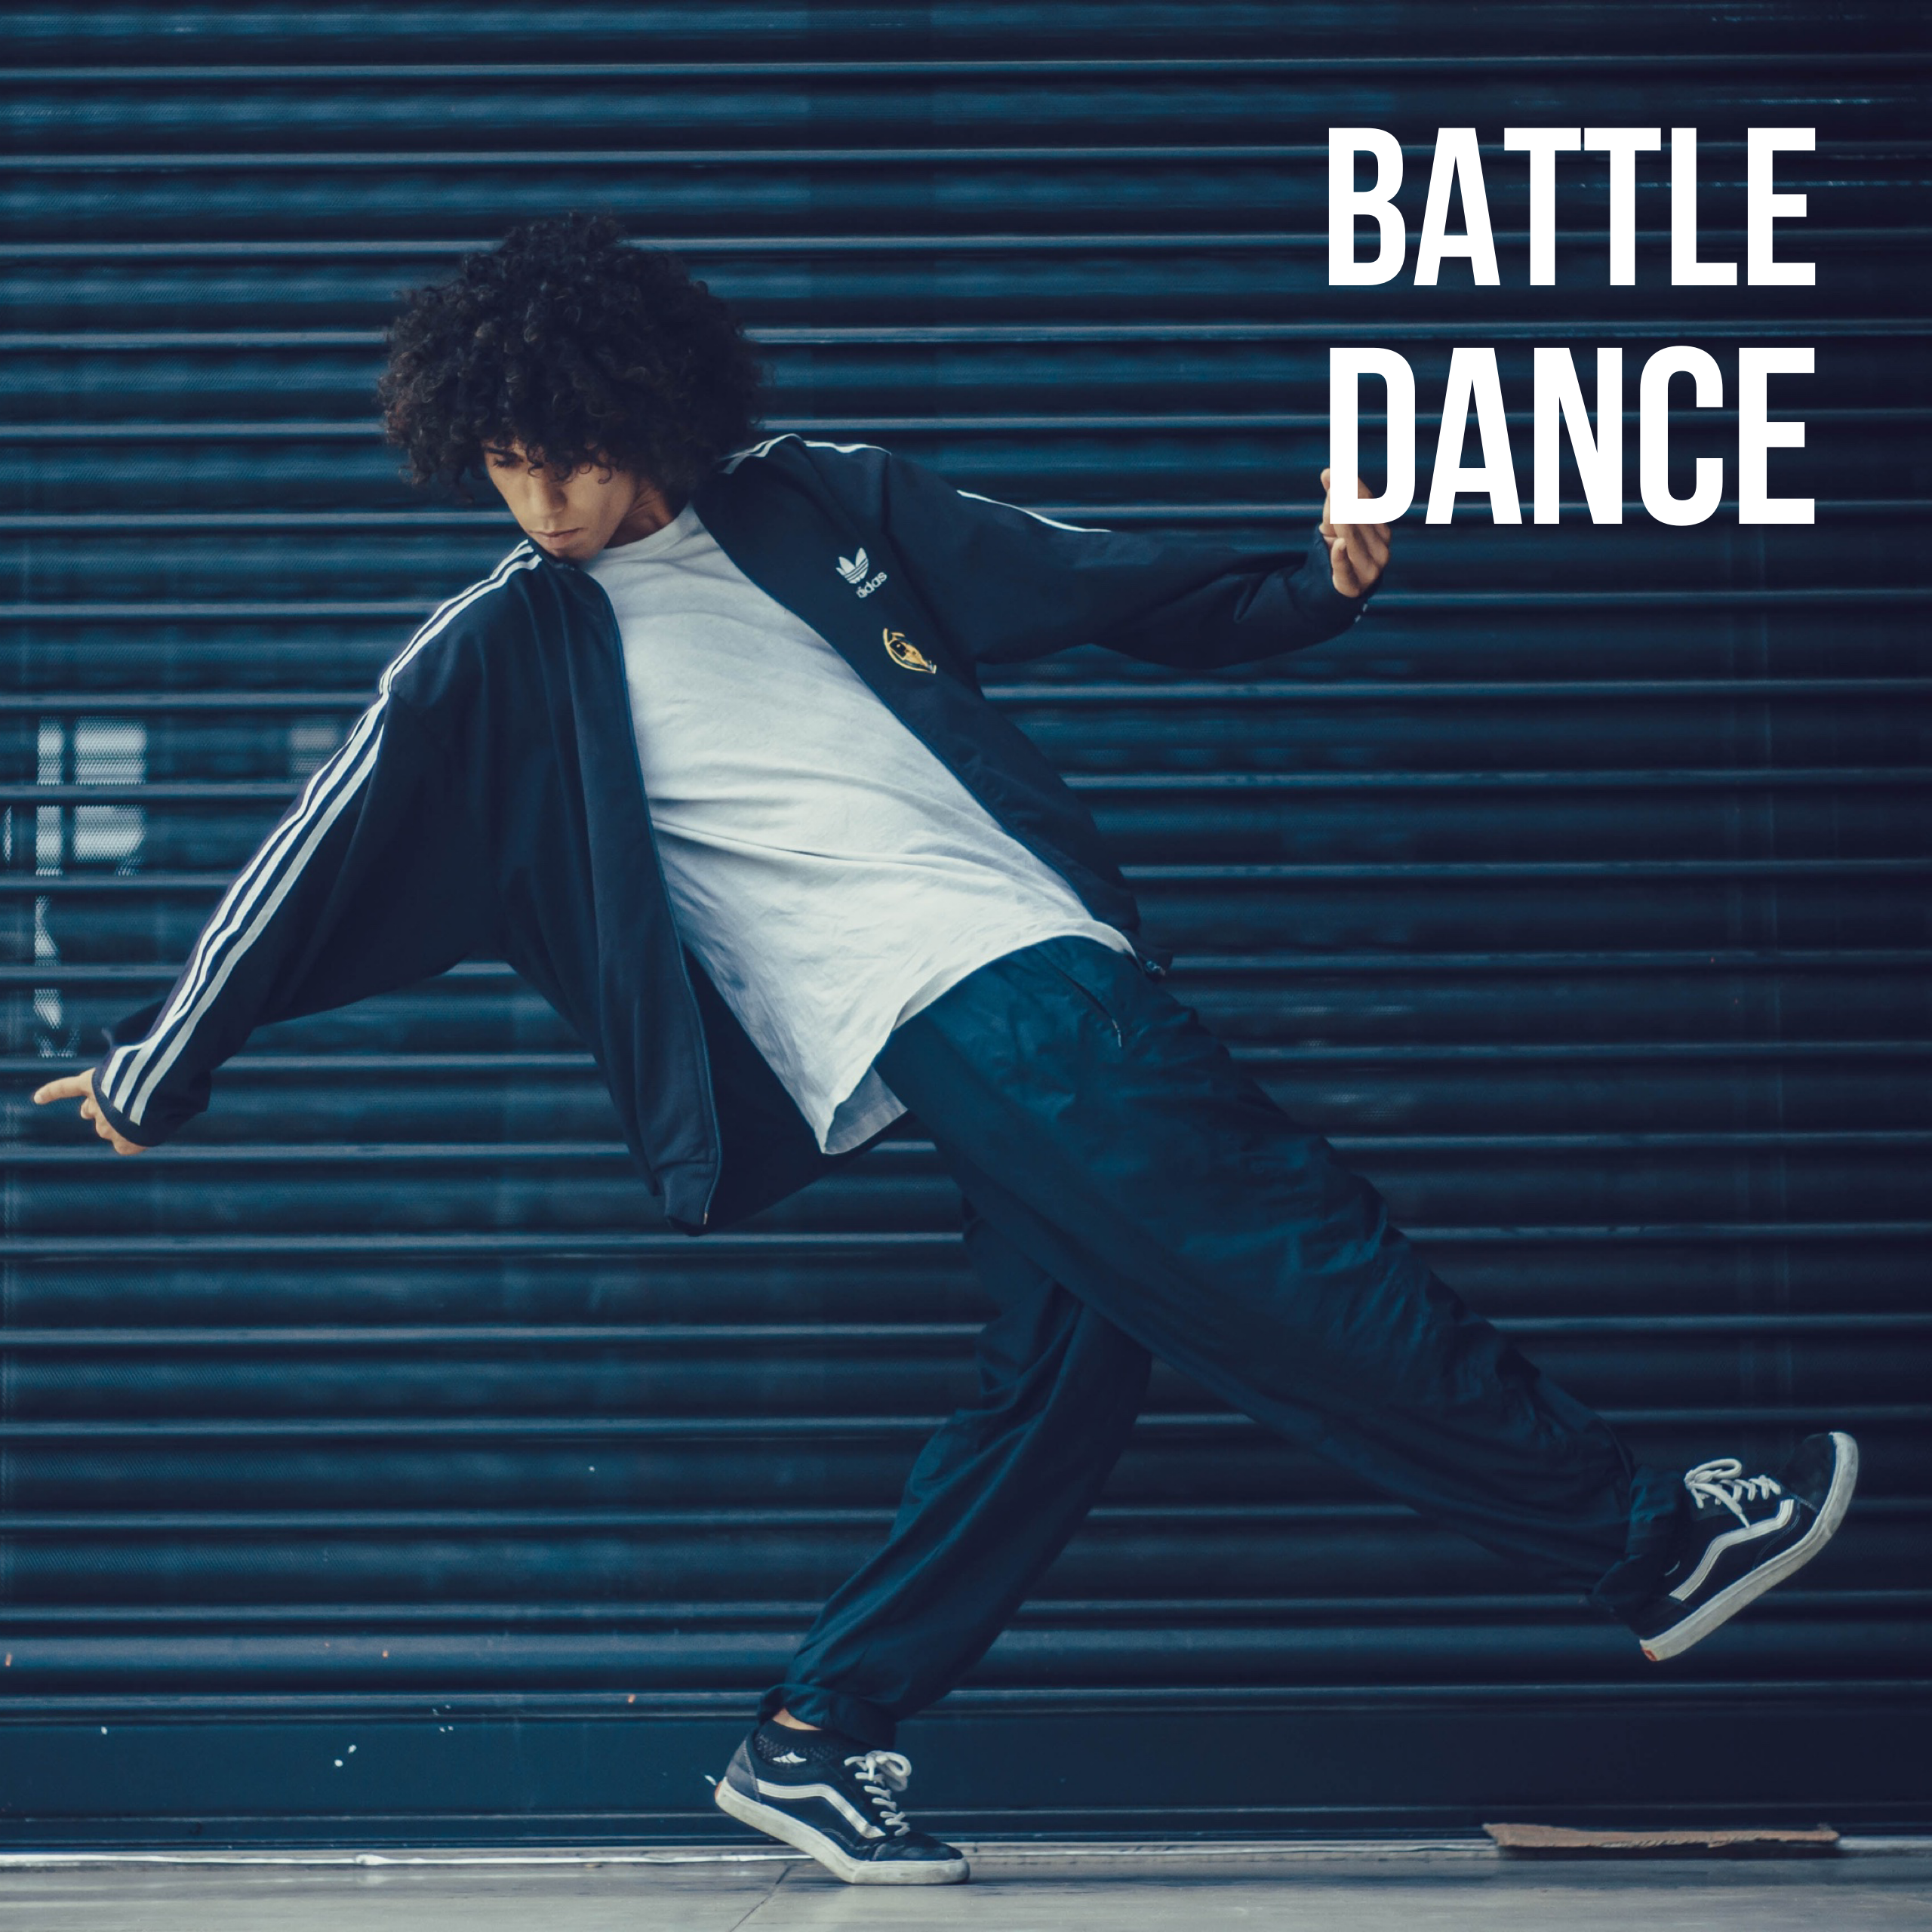 BATTLE DANCE - DJ SKILLZ